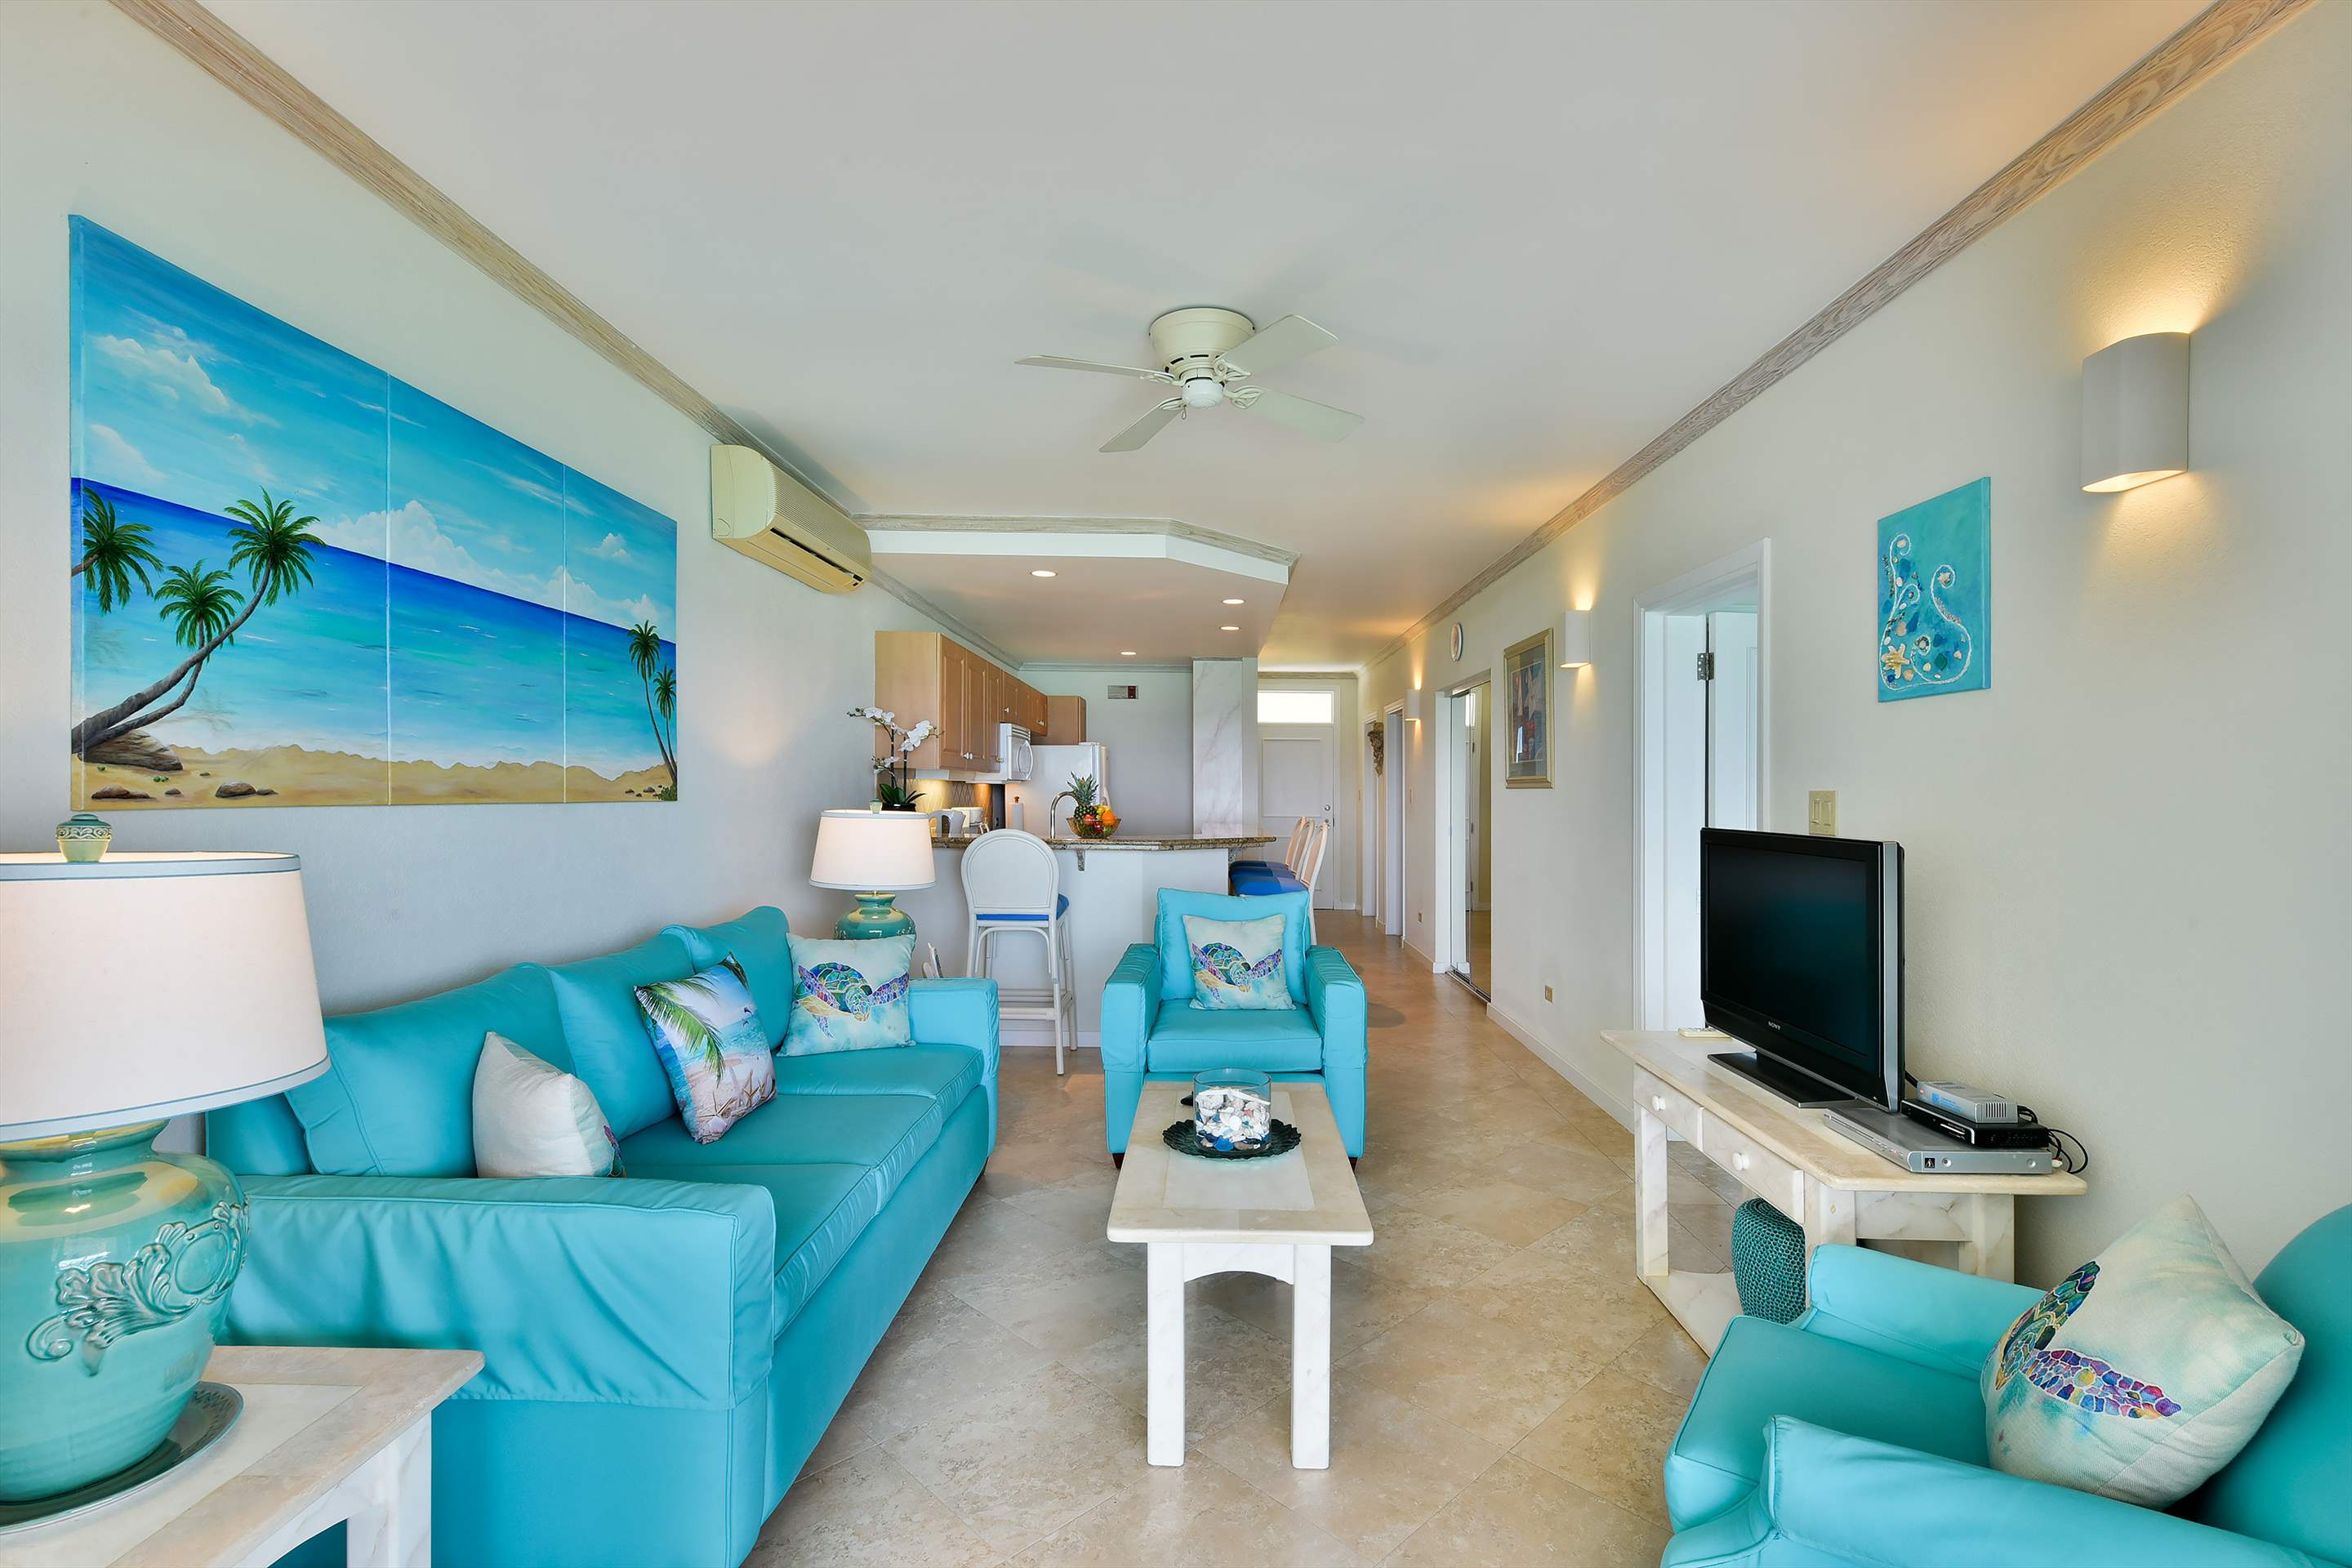 Maxwell Beach Villas 503, 2 bedroom, 2 bedroom villa in St. Lawrence Gap & South Coast, Barbados Photo #5